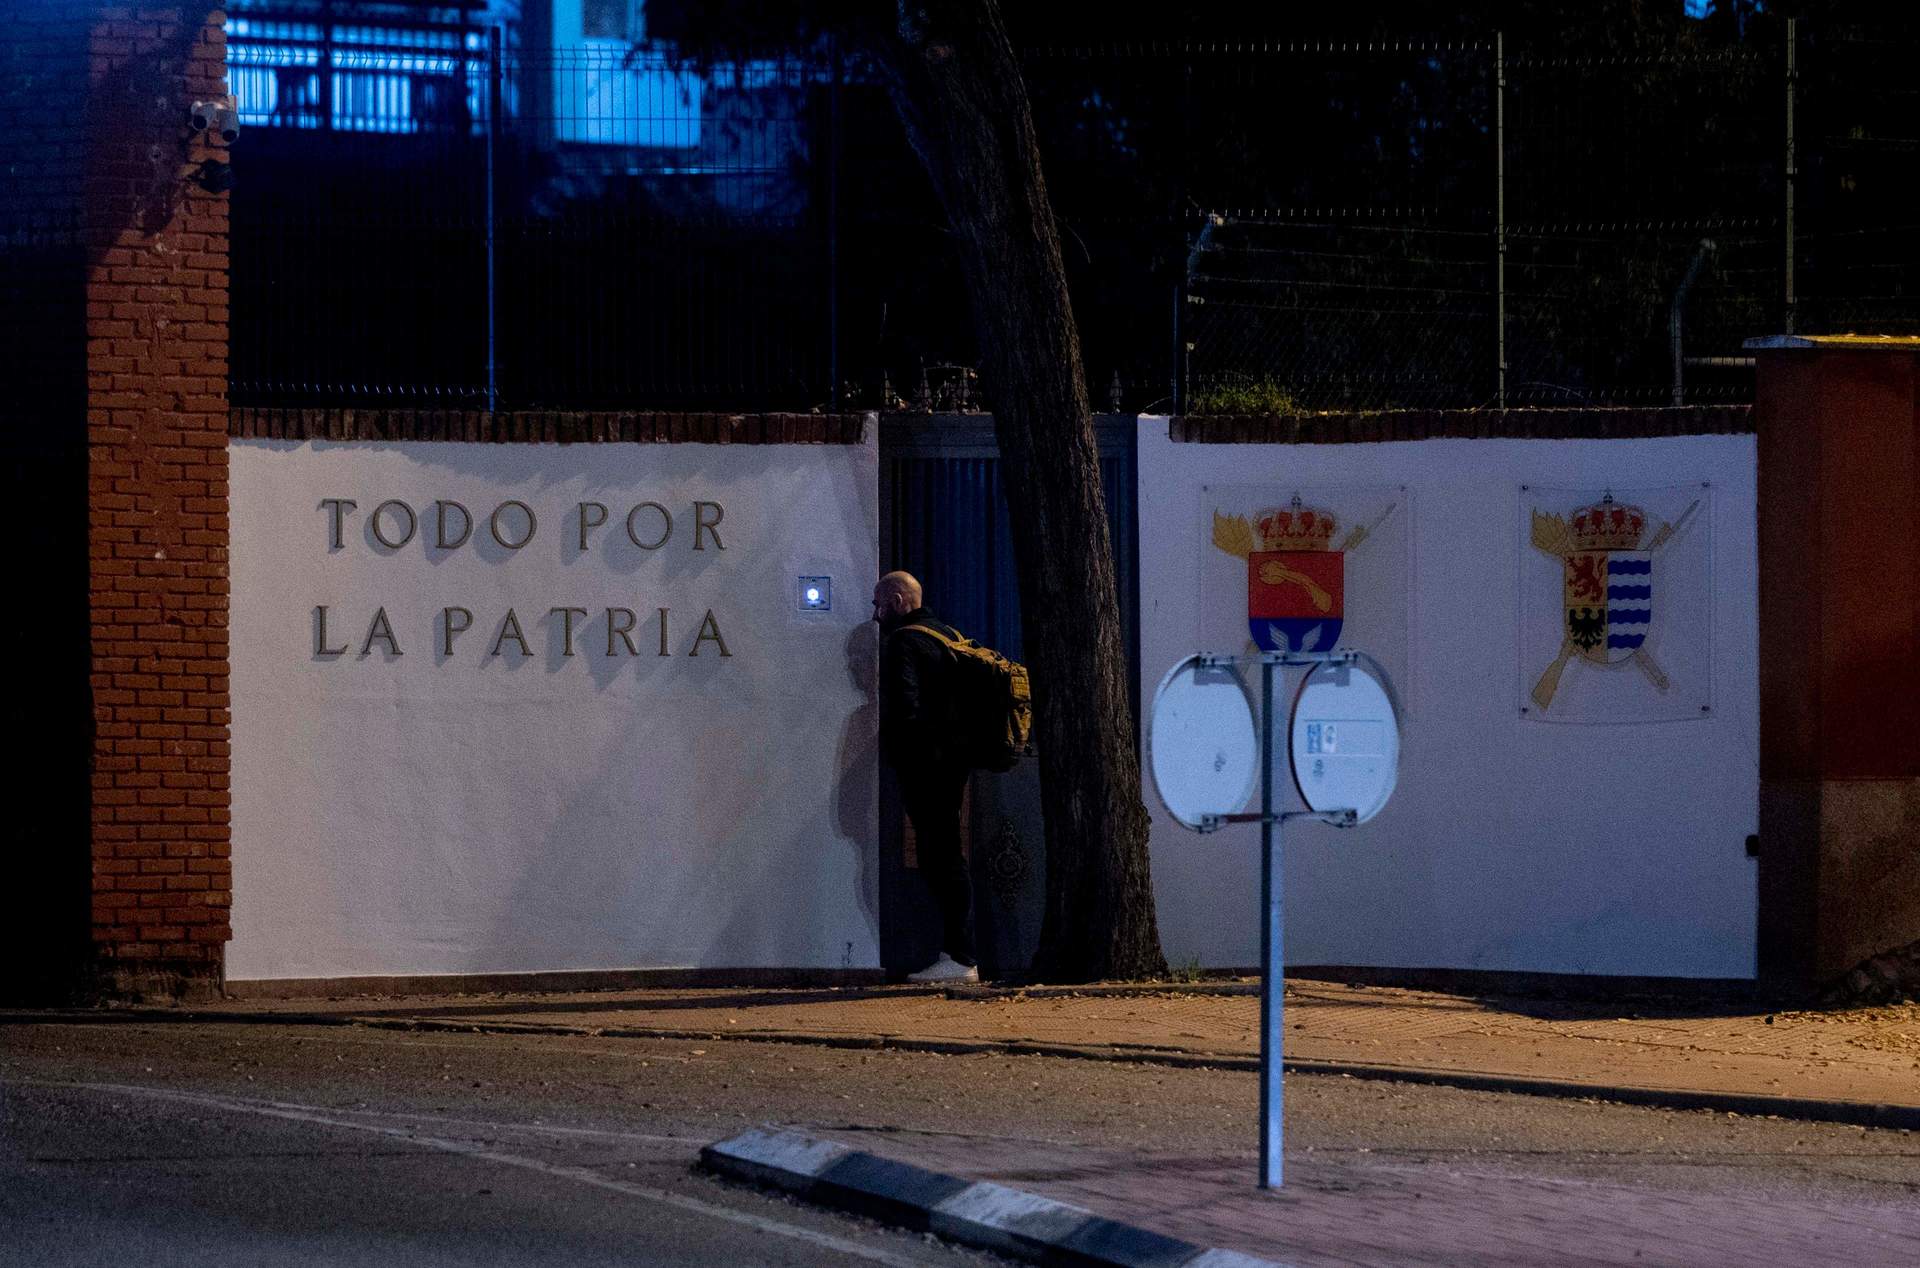 La capacidad del centro de migrantes de Alcalá (Madrid) aumenta en 100 plazas sin plan de seguridad, según Ayuntamiento